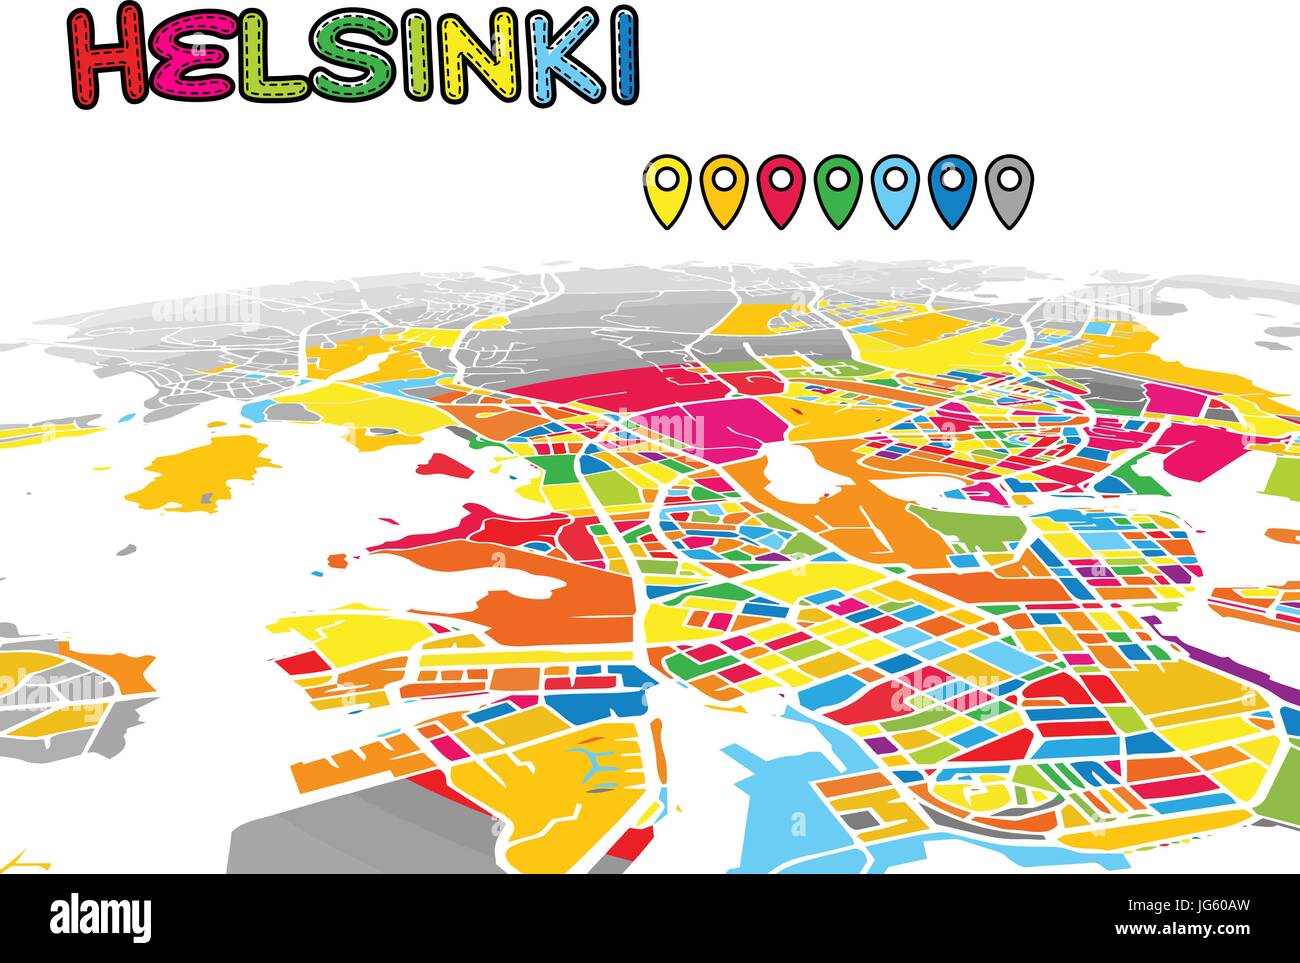 A Helsinki, Finlandia, Downtown 3D Mappa vettoriale delle famose strade. Primo piano luminoso pieno di colori. Strade bianche, sulle vie navigabili interne e lo sfondo grigio areale e. Whi Illustrazione Vettoriale